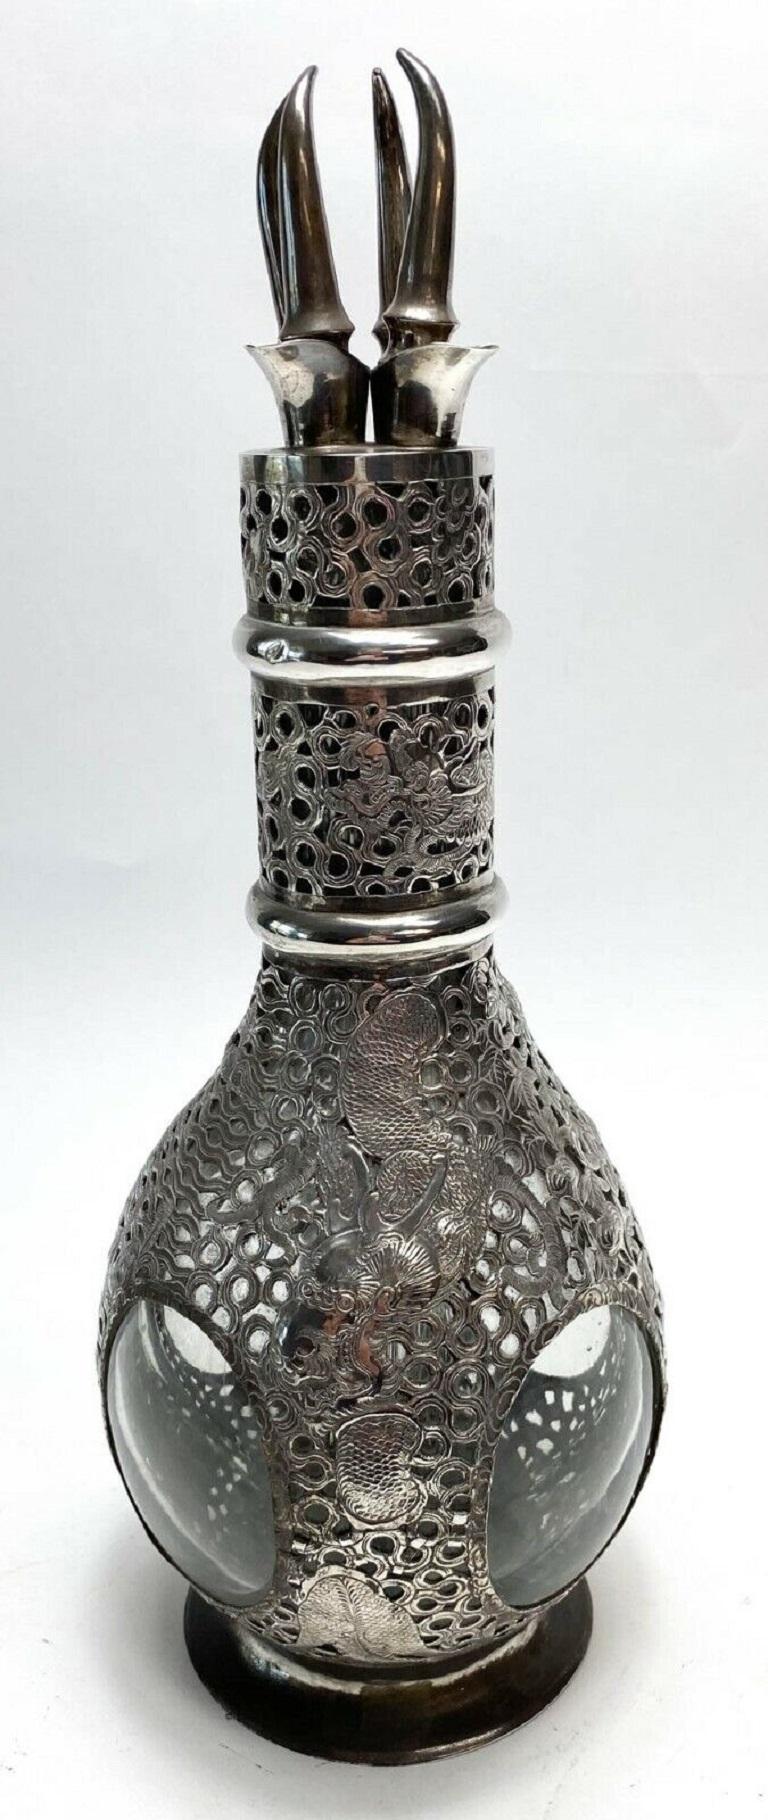 Carafe à liqueur à quatre compartiments en argent chinois, vers 1920

La carafe en métal argenté comporte 4 compartiments distincts pour l'alcool. Chaque compartiment présente un motif différent sur le fond argenté. Chaque côté de la carafe